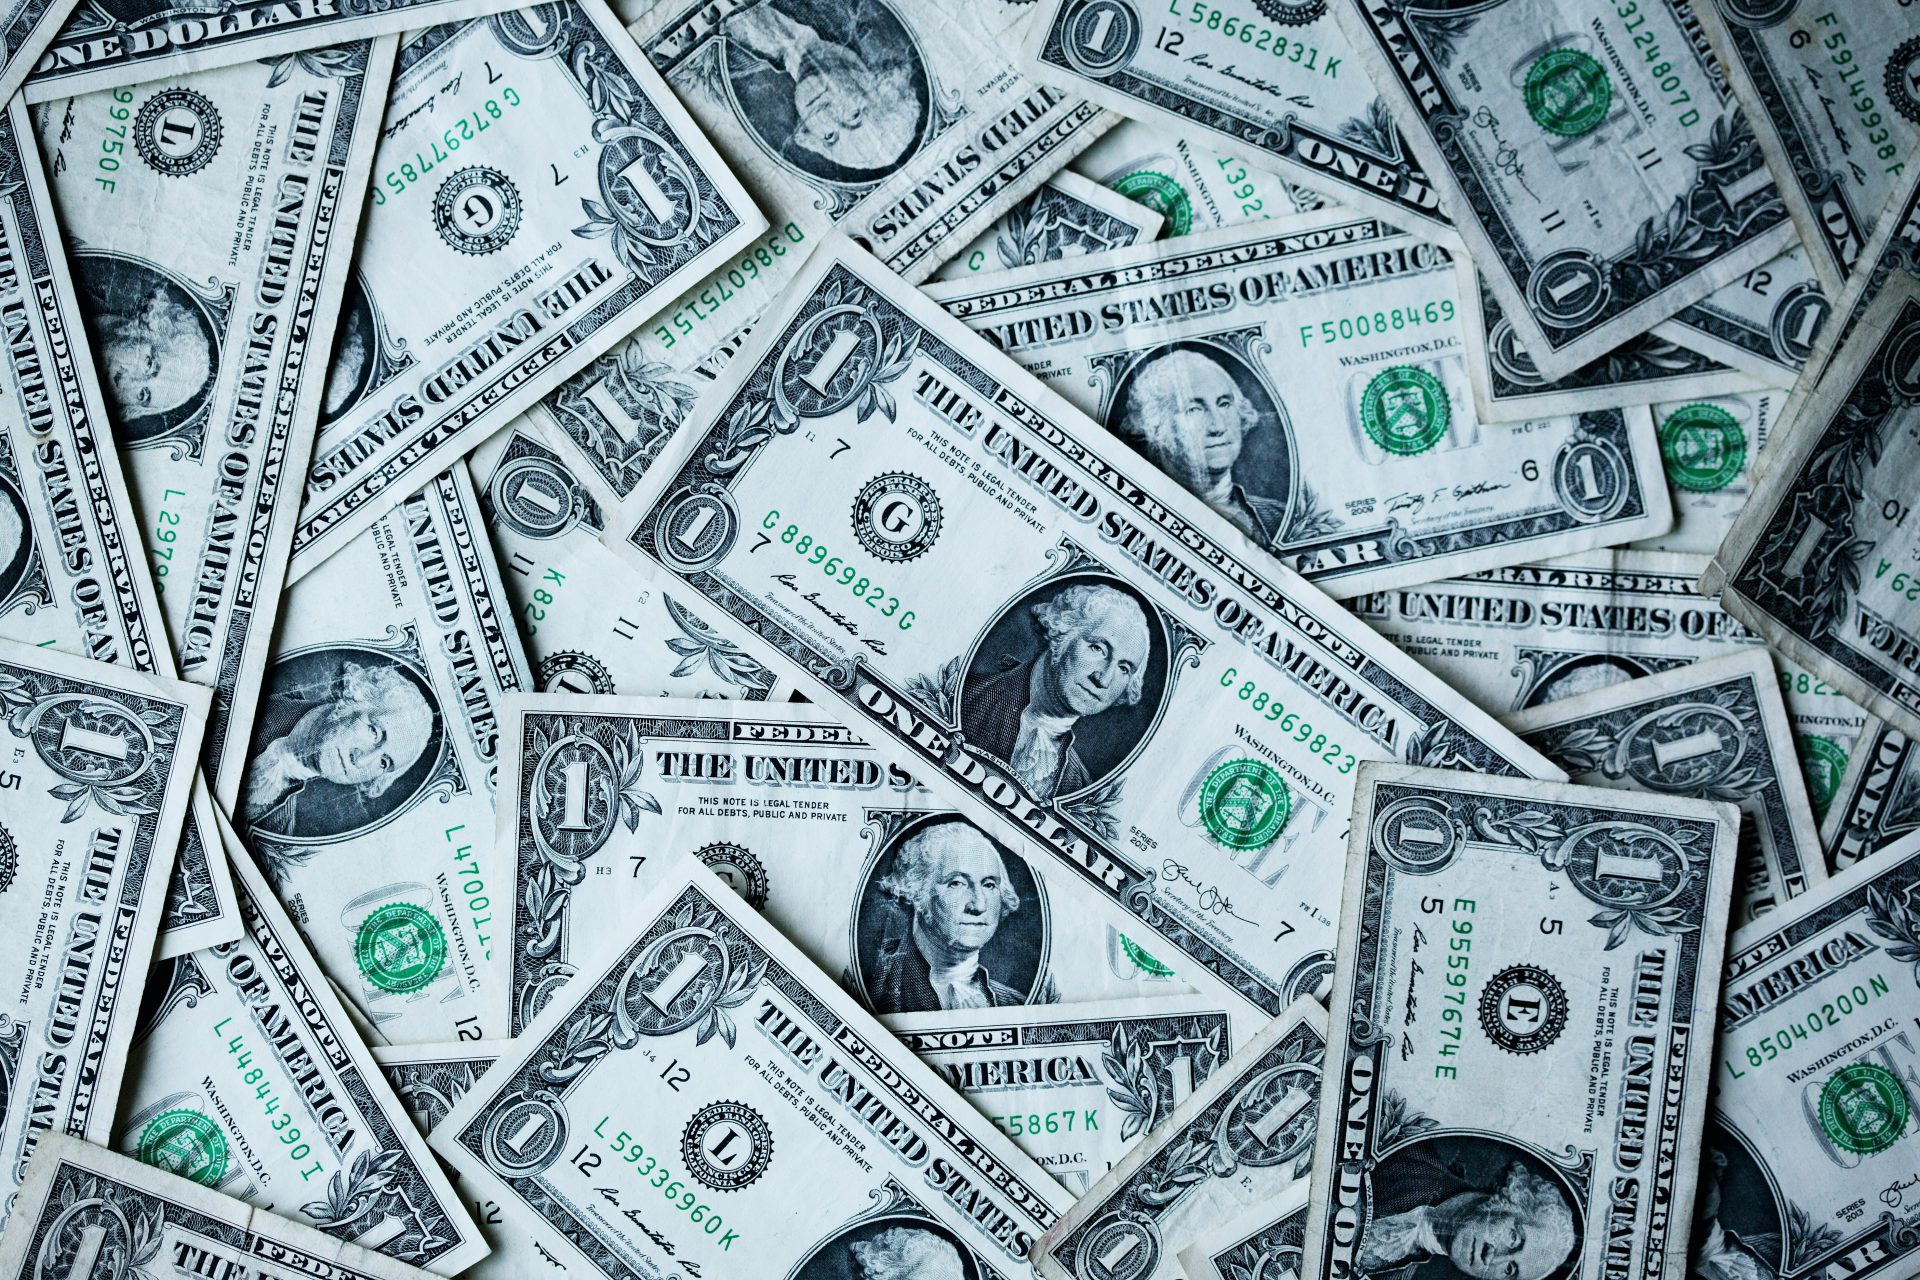 مدیر عامل بلک راک هشدار داد که بحران بدهی می تواند به دلار آمریکا پایان دهد